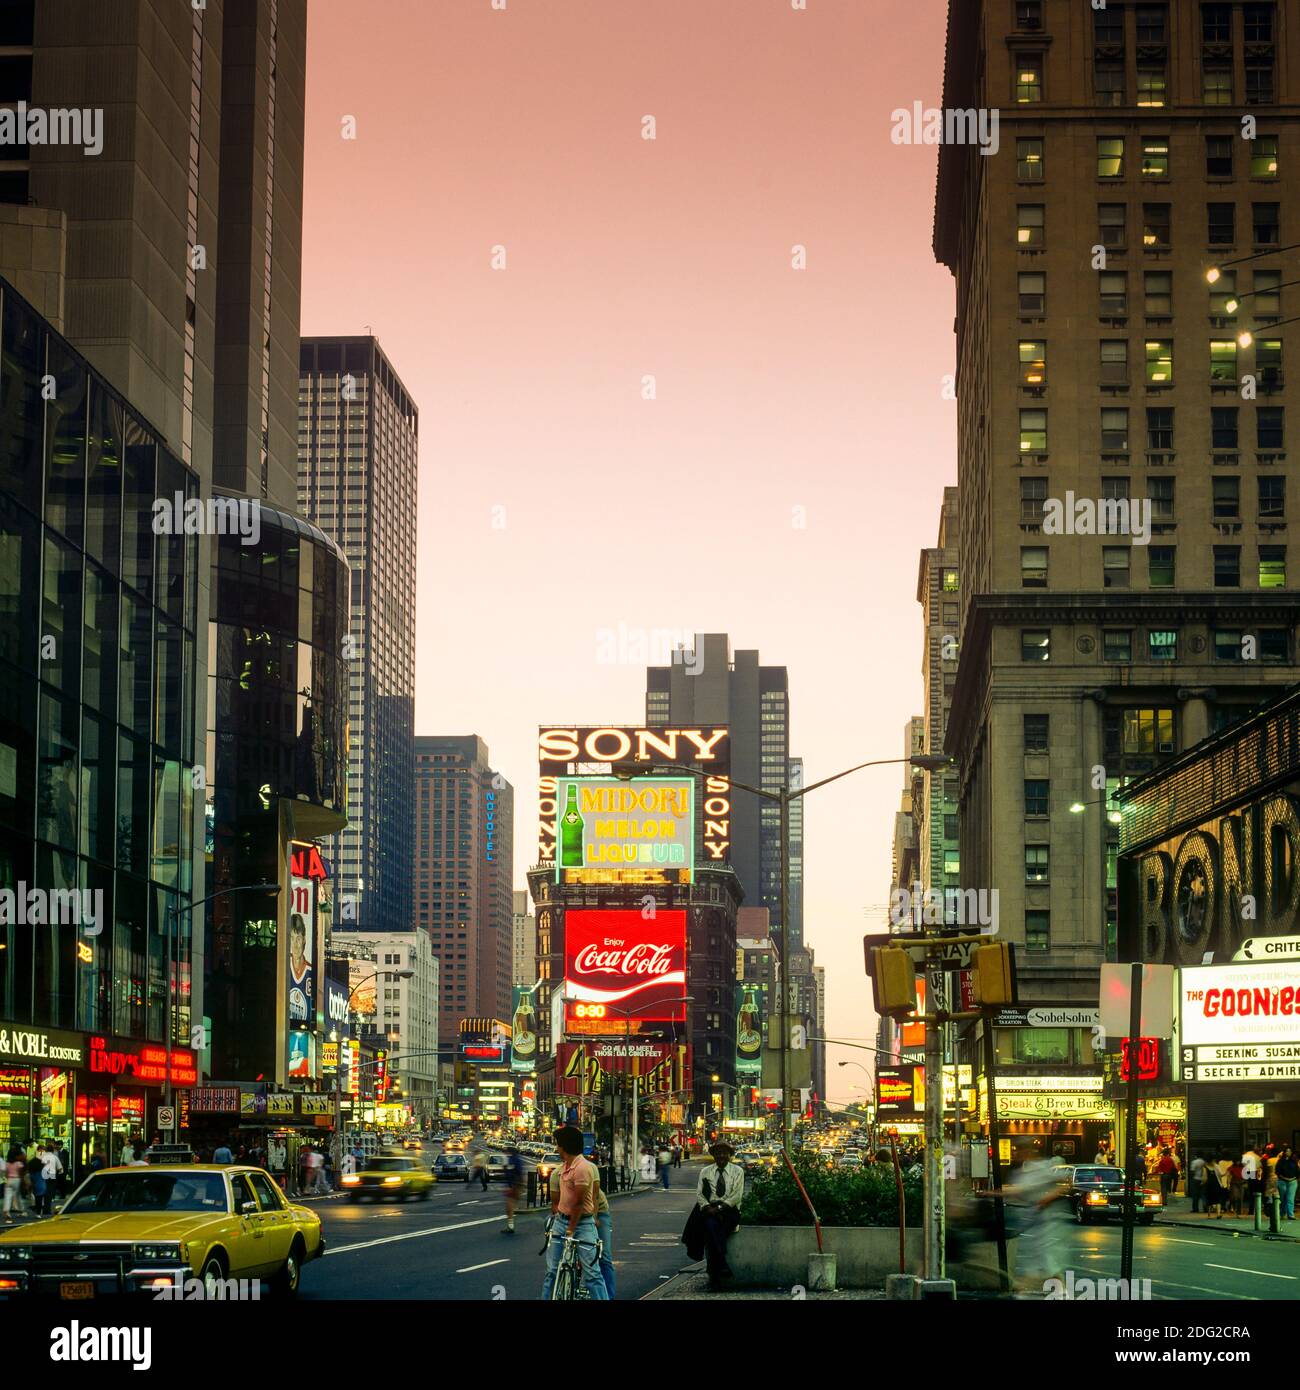 New York 1985, Times Square al crepuscolo, insegne pubblicitarie illuminate, automobili, persone, Midtown Manhattan, New York City, NY, New York, USA, Foto Stock